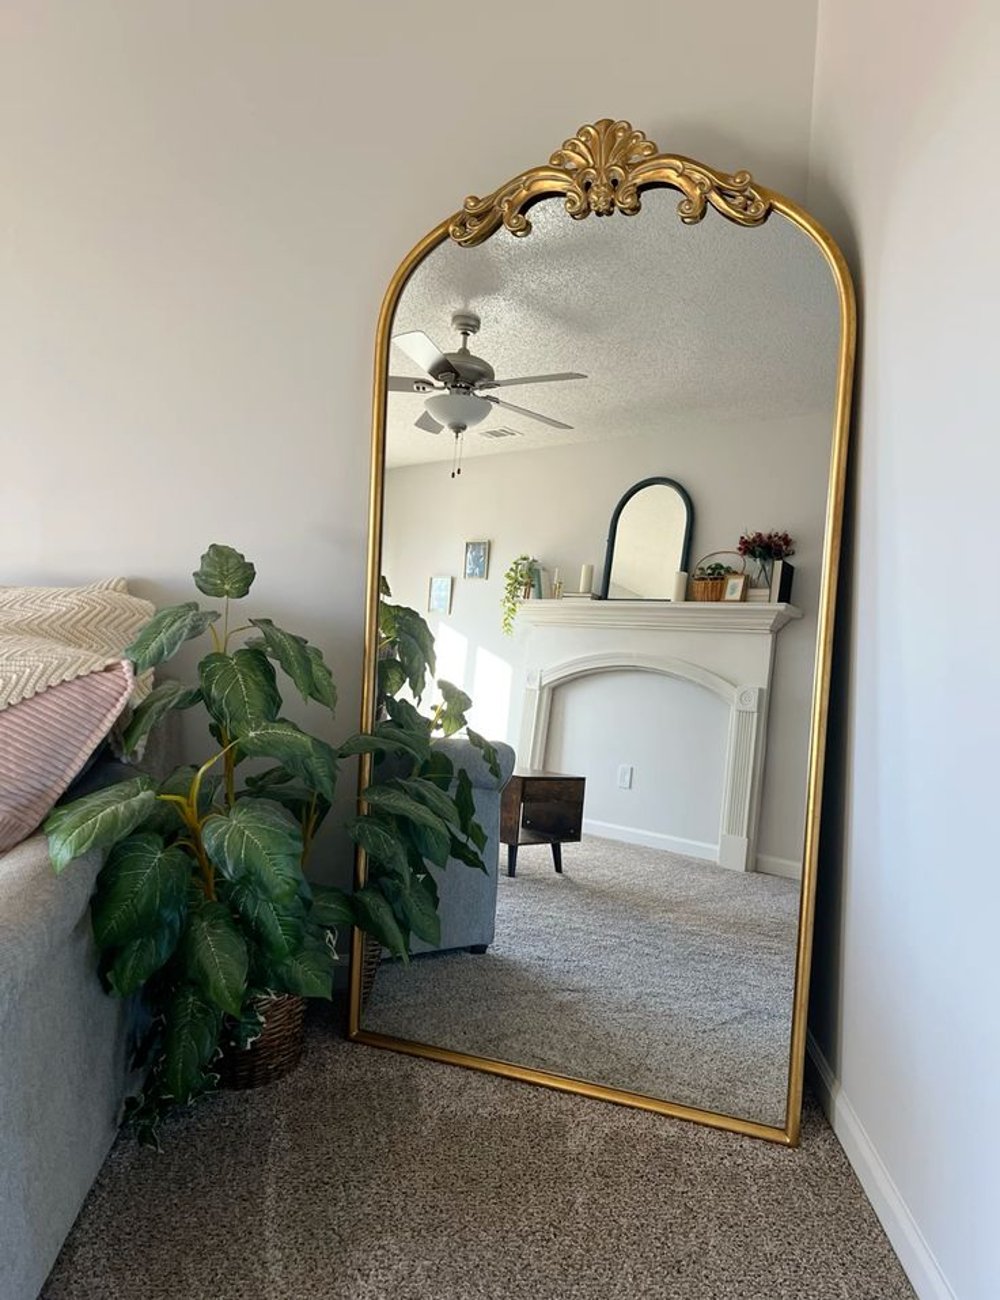 Decor - espelho - dourado na decoração - dicas - casa - https://stealthelook.com.br